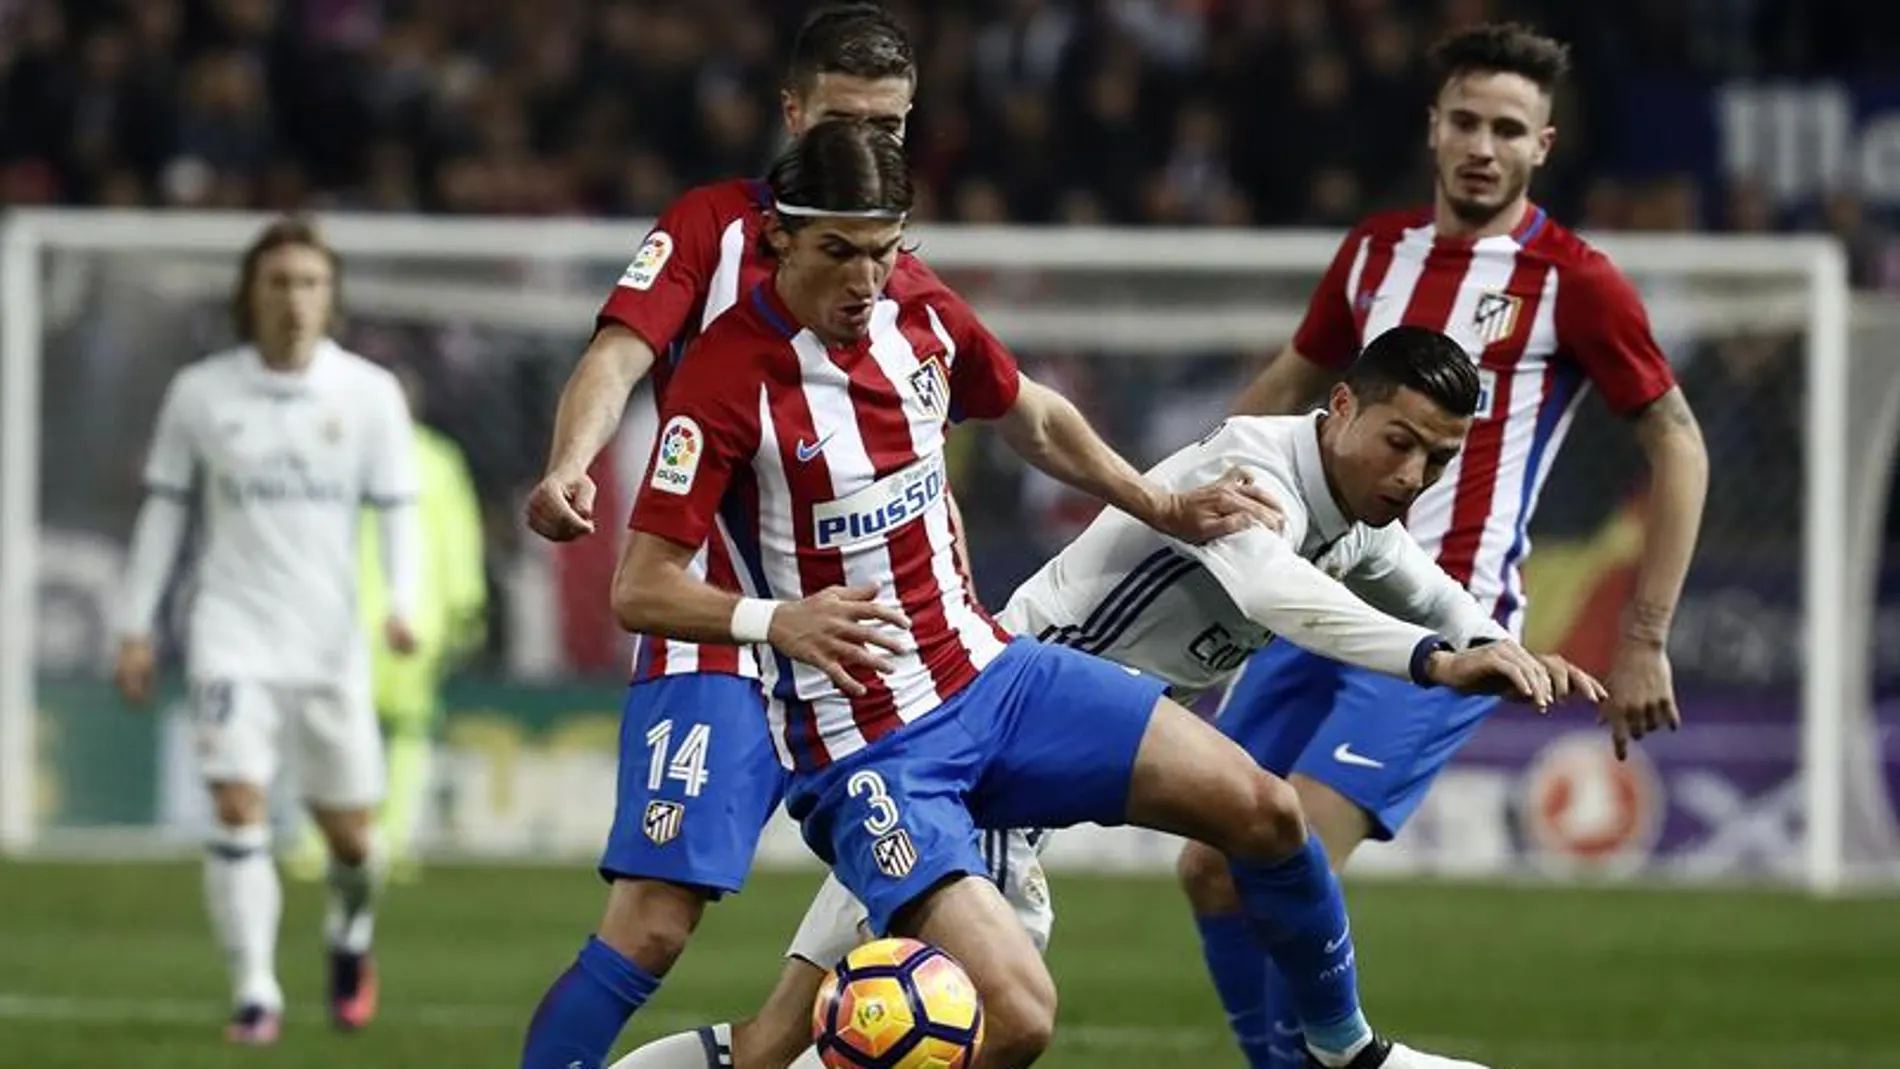 El portugués Cristiano Ronaldo (d), del Real Madrid, lucha el balón con el defensa brasielño del Atlético de Madrid Filipe Luis